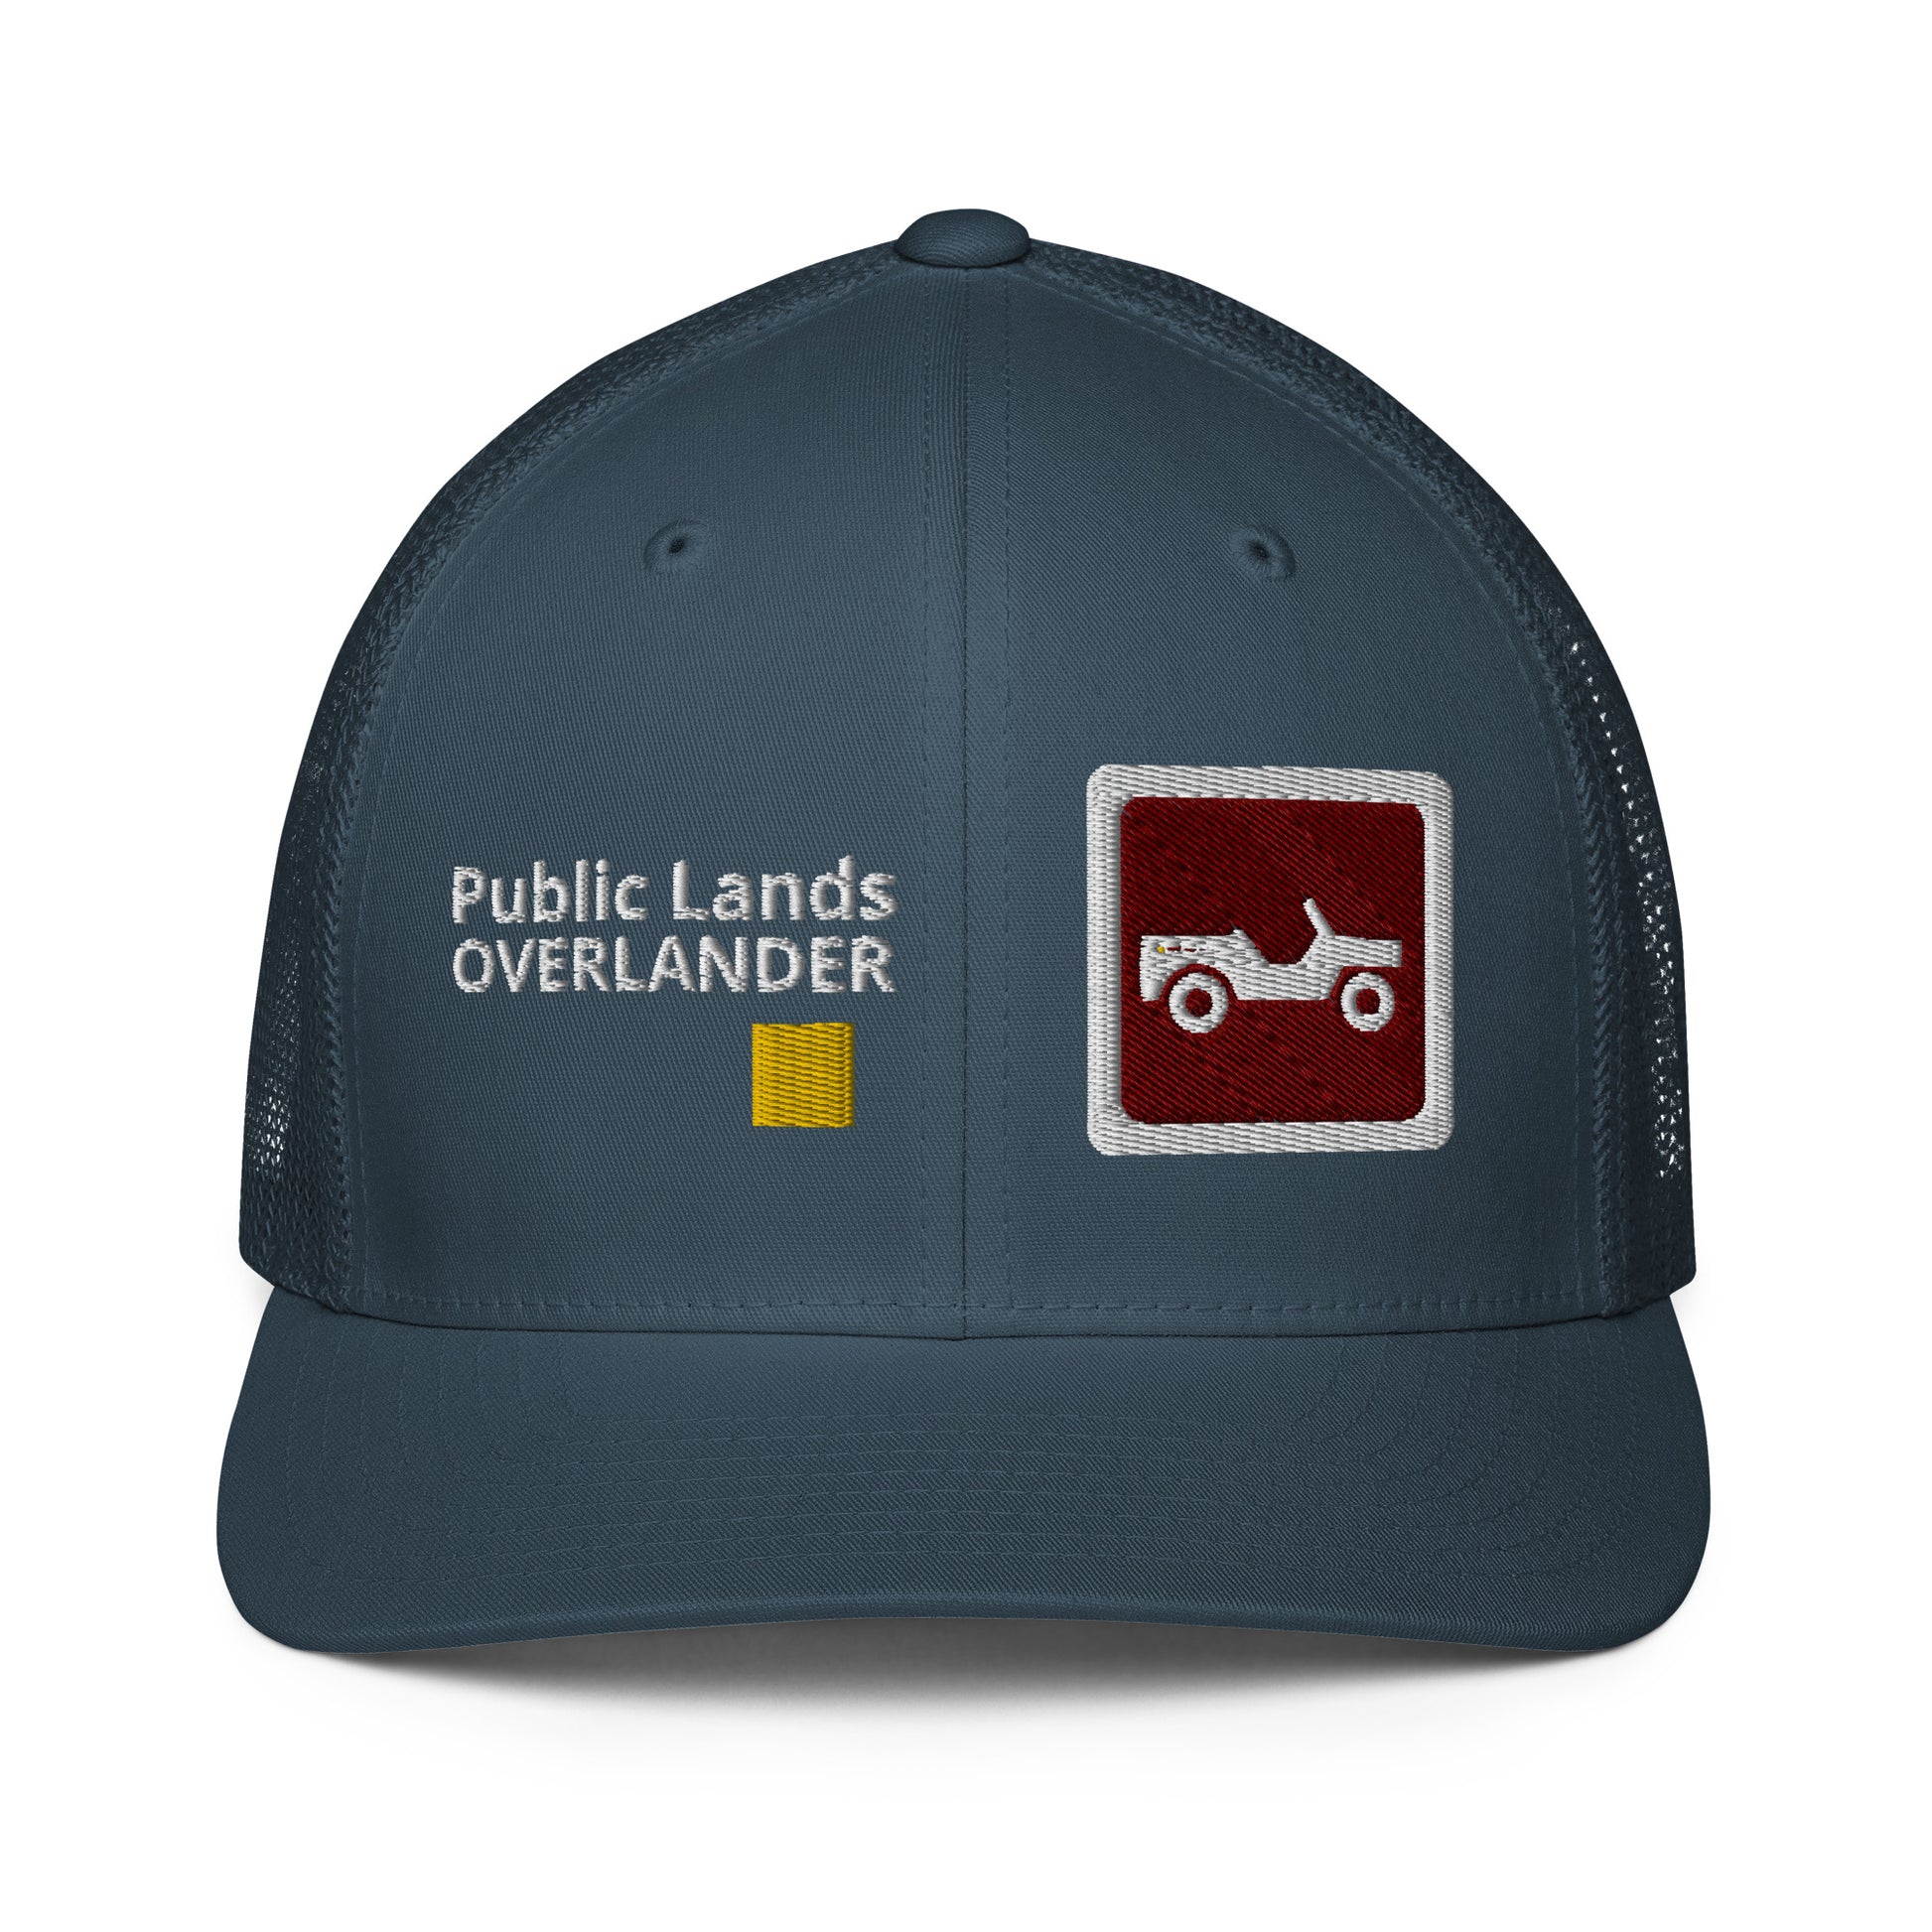 Teal Public Lands OVERLANDER trucker cap. Front facing. overland365.com